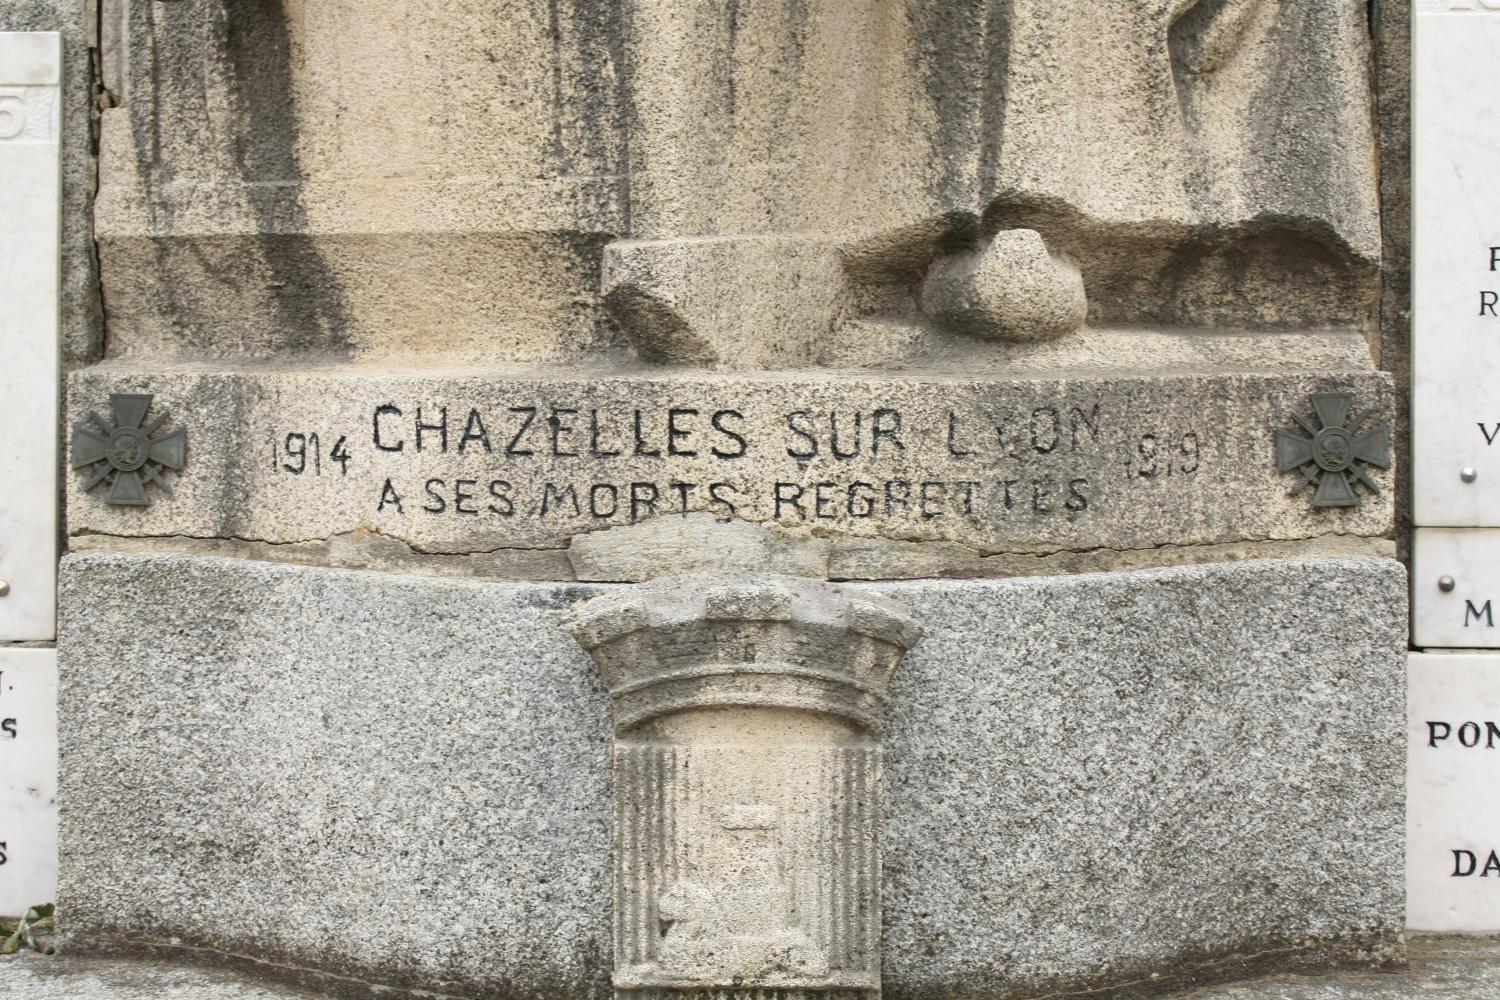 Monument aux morts, Chazelles-sur-Lyon, Loire